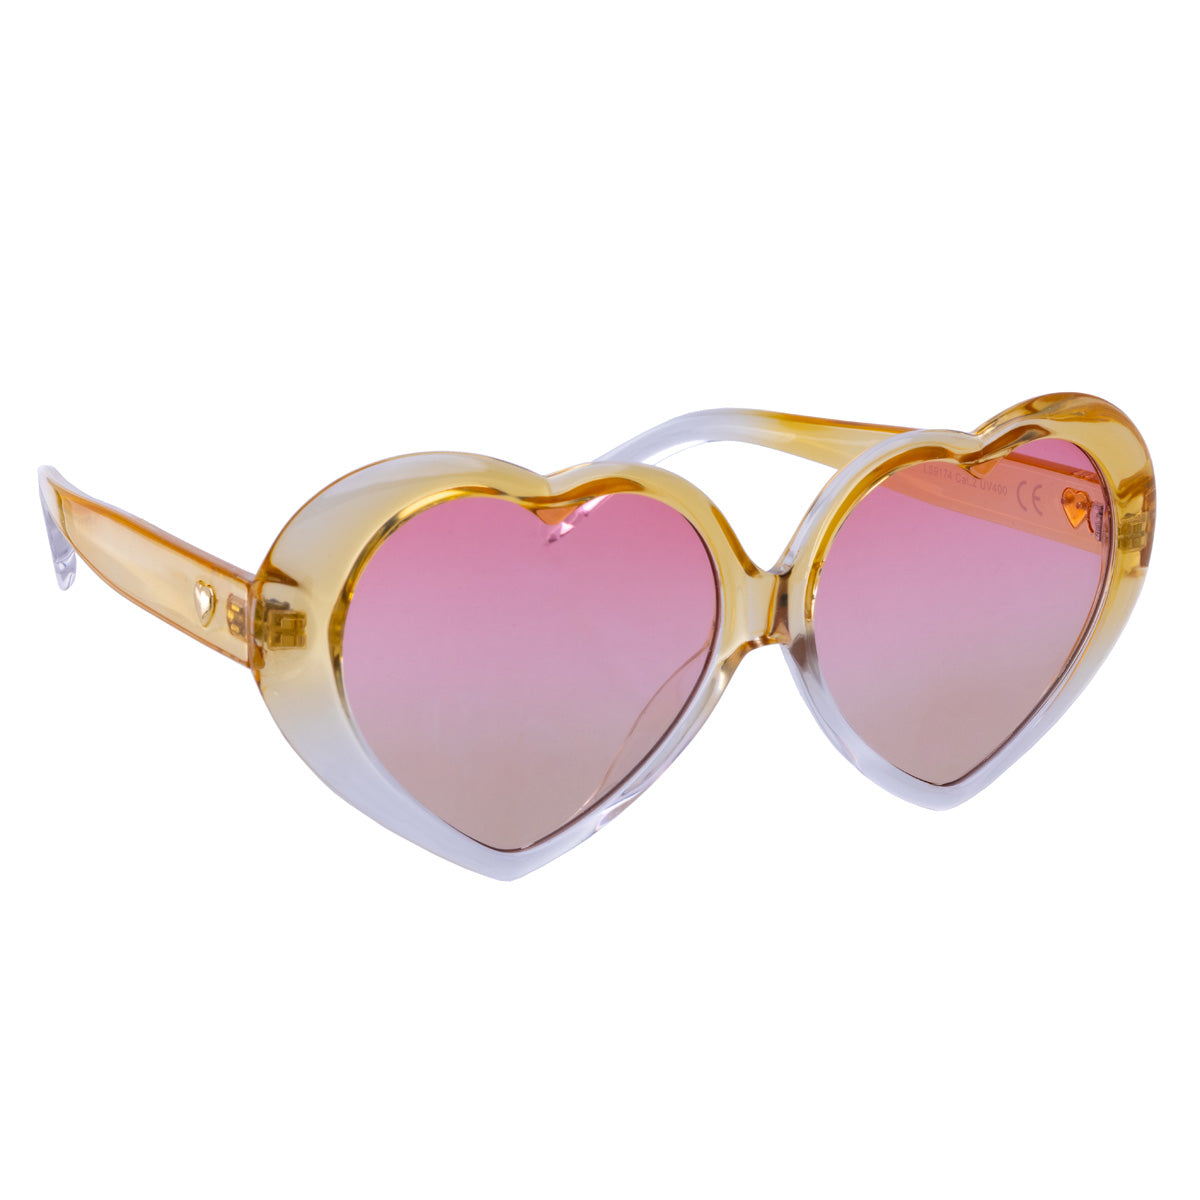 Big heart sunglasses